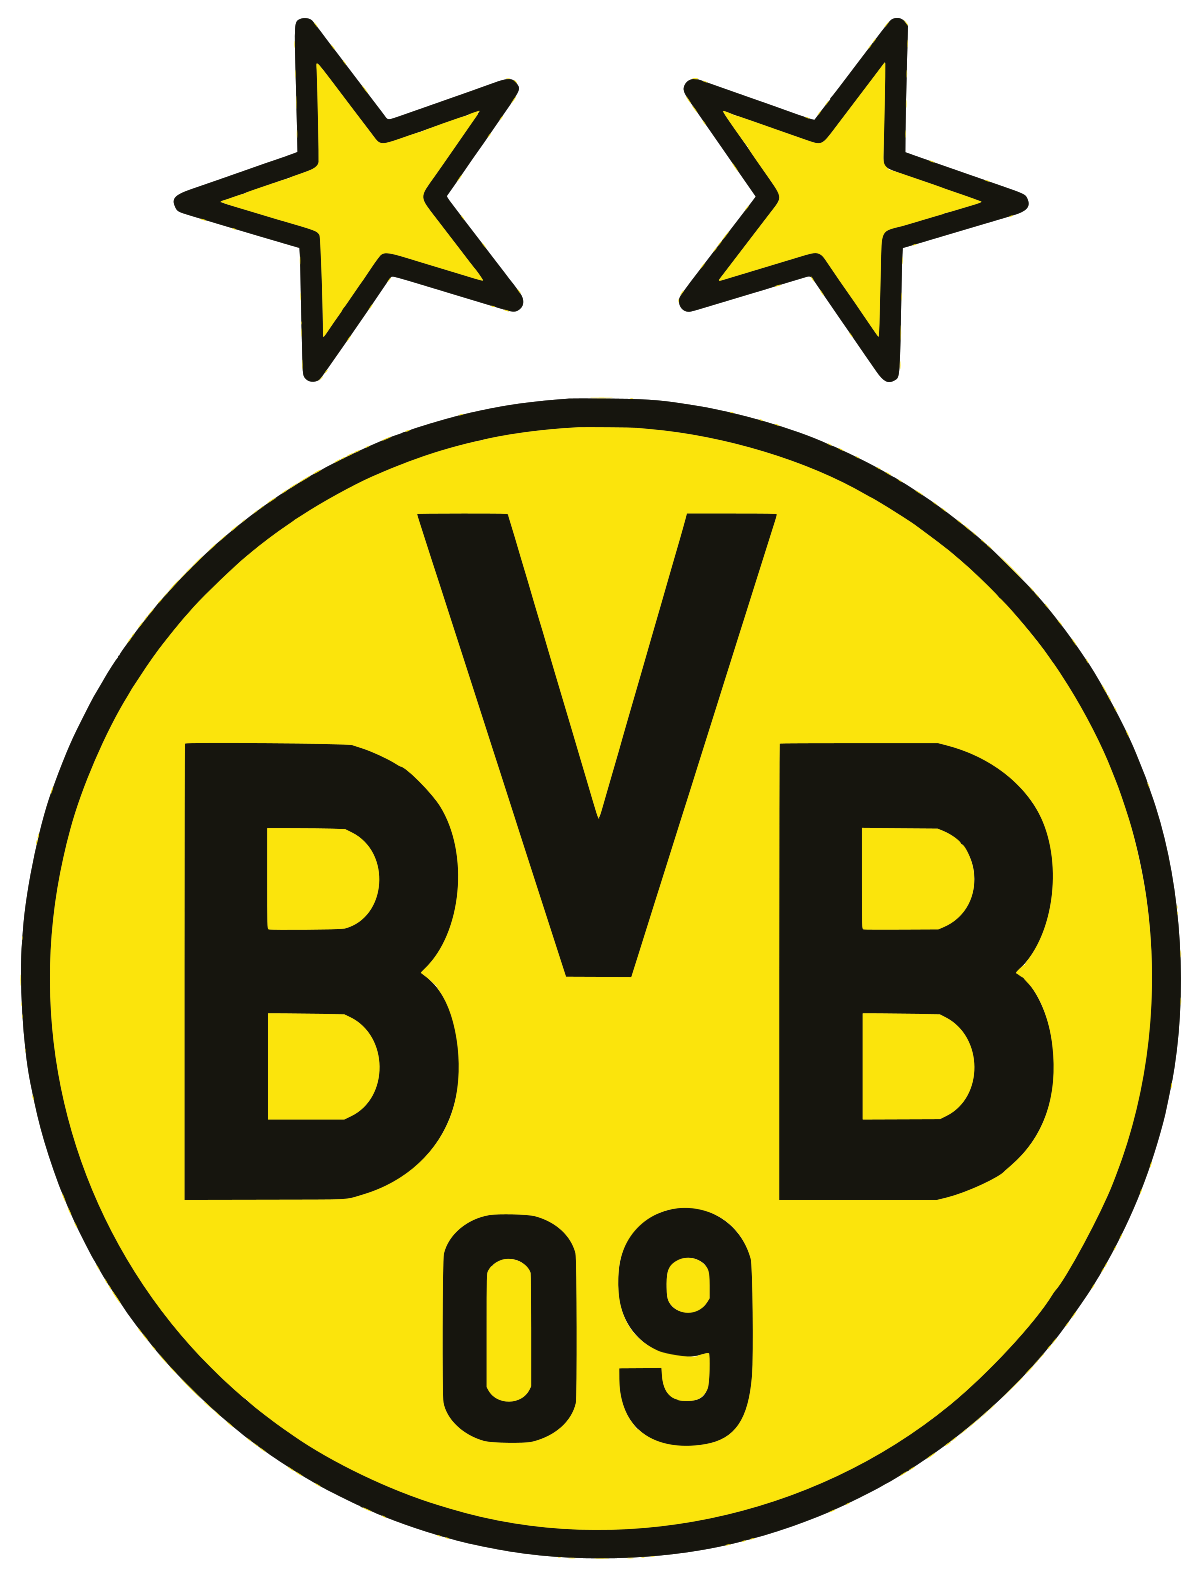 BVB Dortmund F